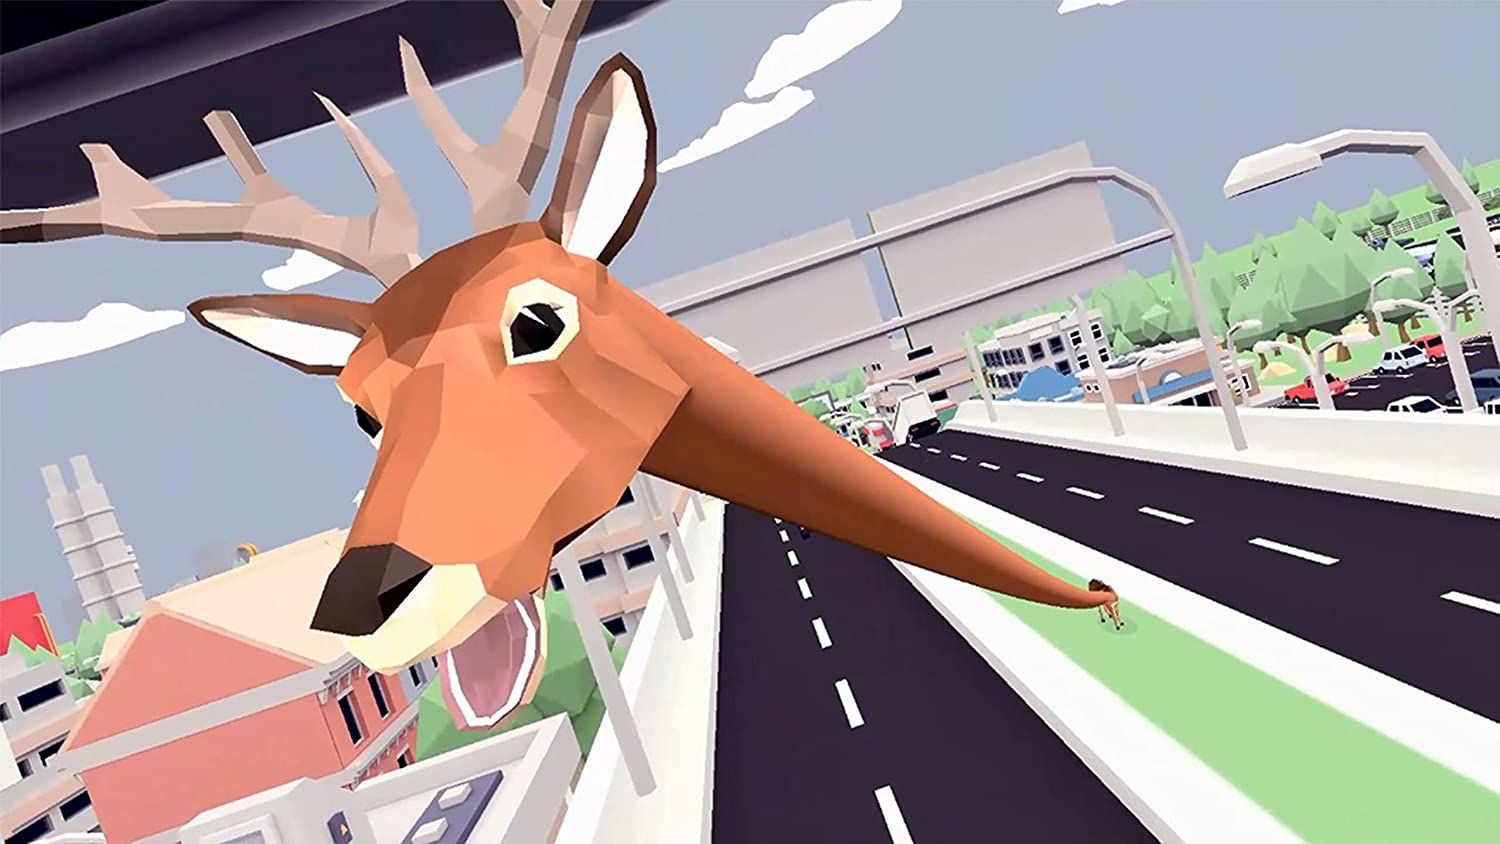 DEEEER Simulator: Your Average Everyday Deer Game (NSW)